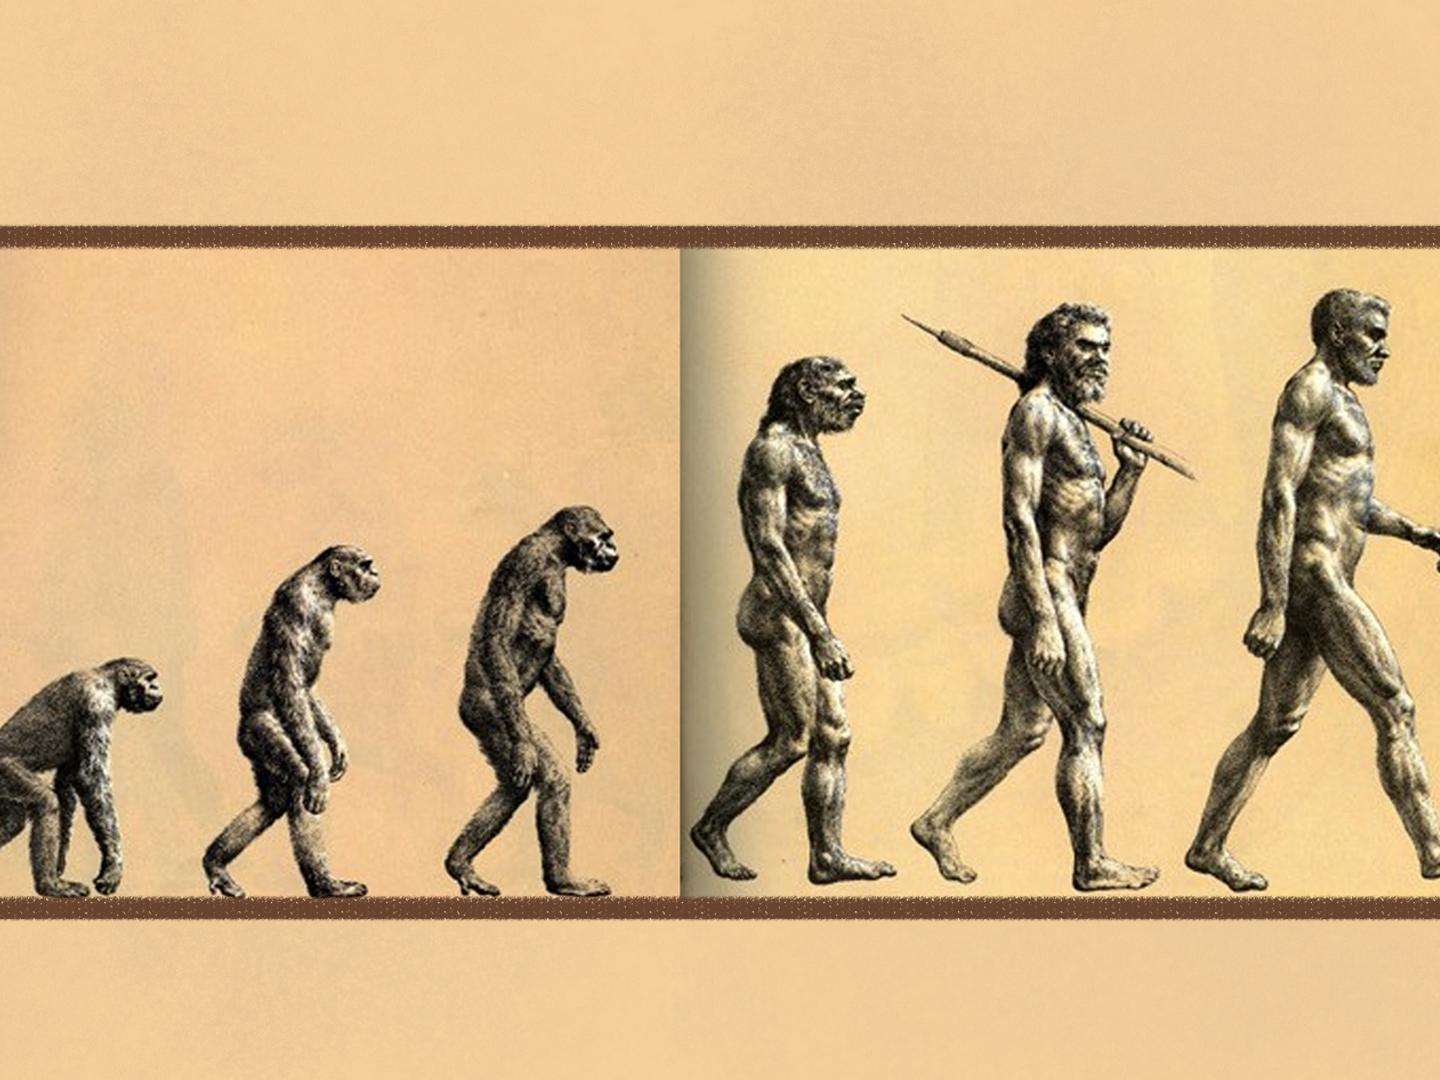 进化论遭质疑,人类真是"猴子"变得?科学家做出解释